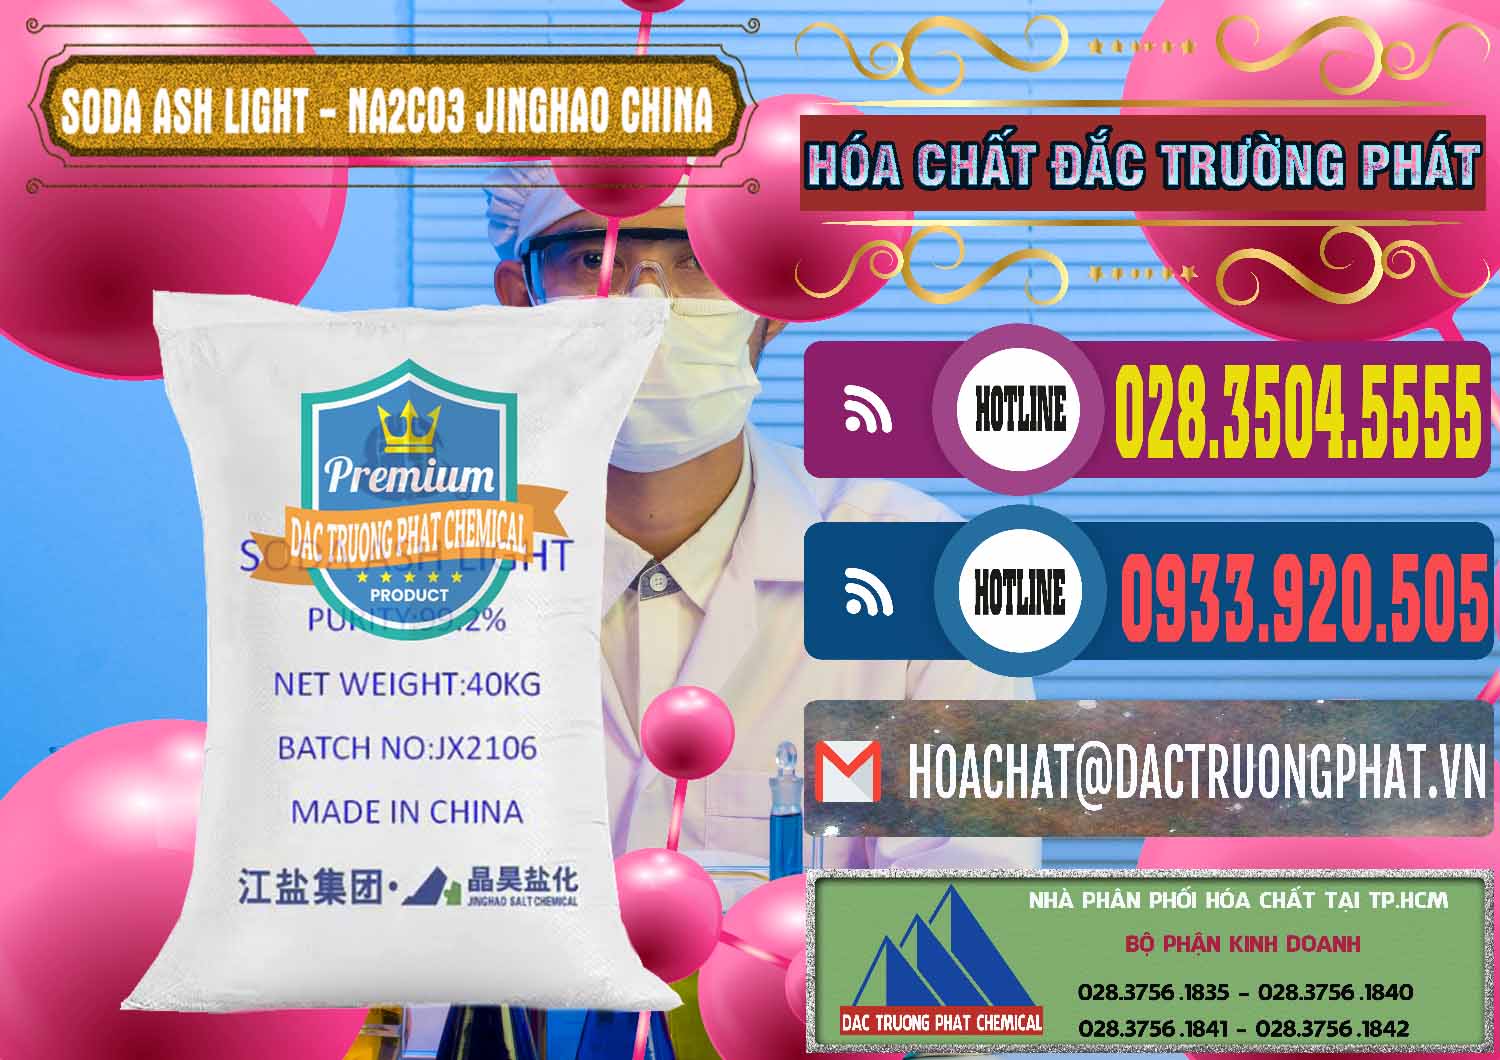 Đơn vị bán và cung cấp Soda Ash Light - NA2CO3 Jinghao Trung Quốc China - 0339 - Cty cung cấp - bán hóa chất tại TP.HCM - muabanhoachat.com.vn